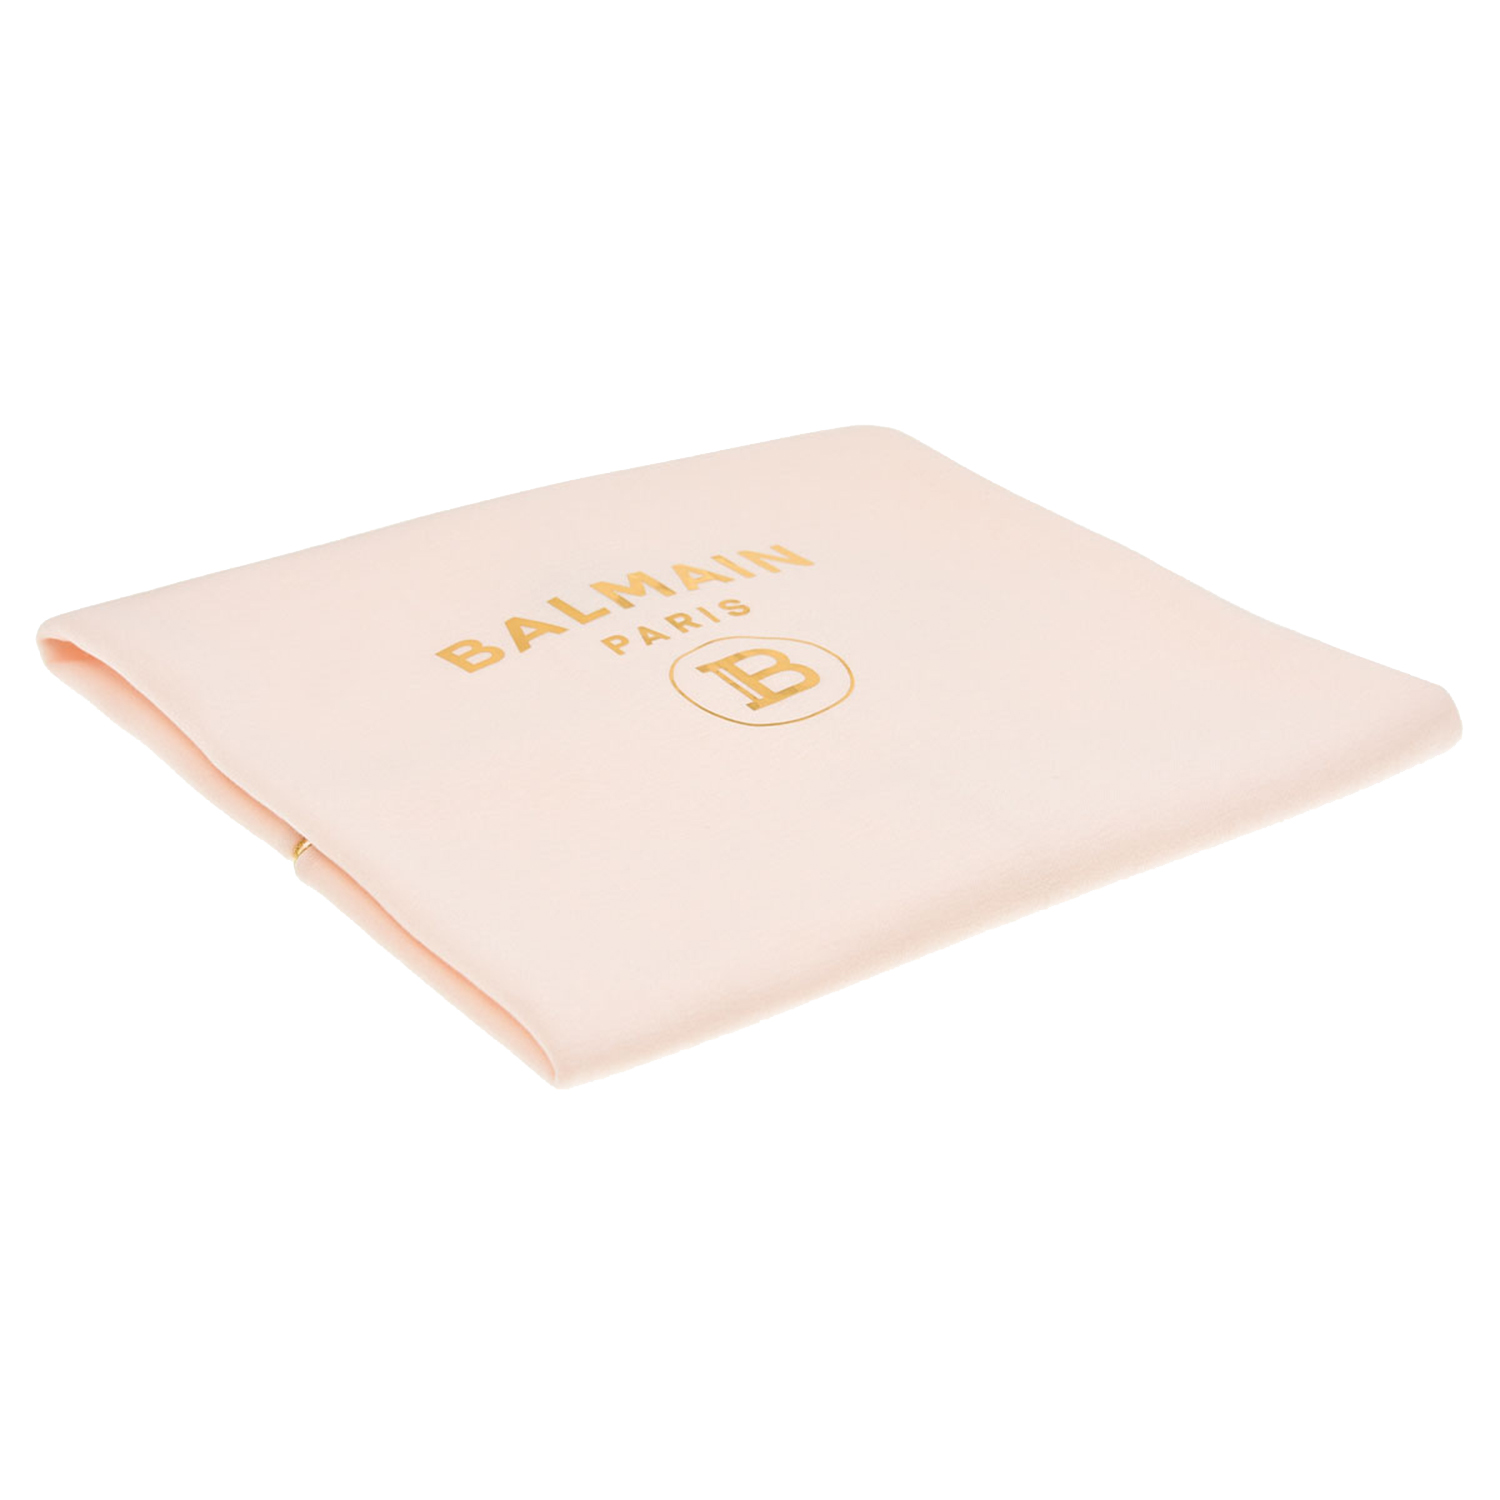 Розовый плед с золотым логотипом Balmain детский, размер unica, цвет нет цвета - фото 1